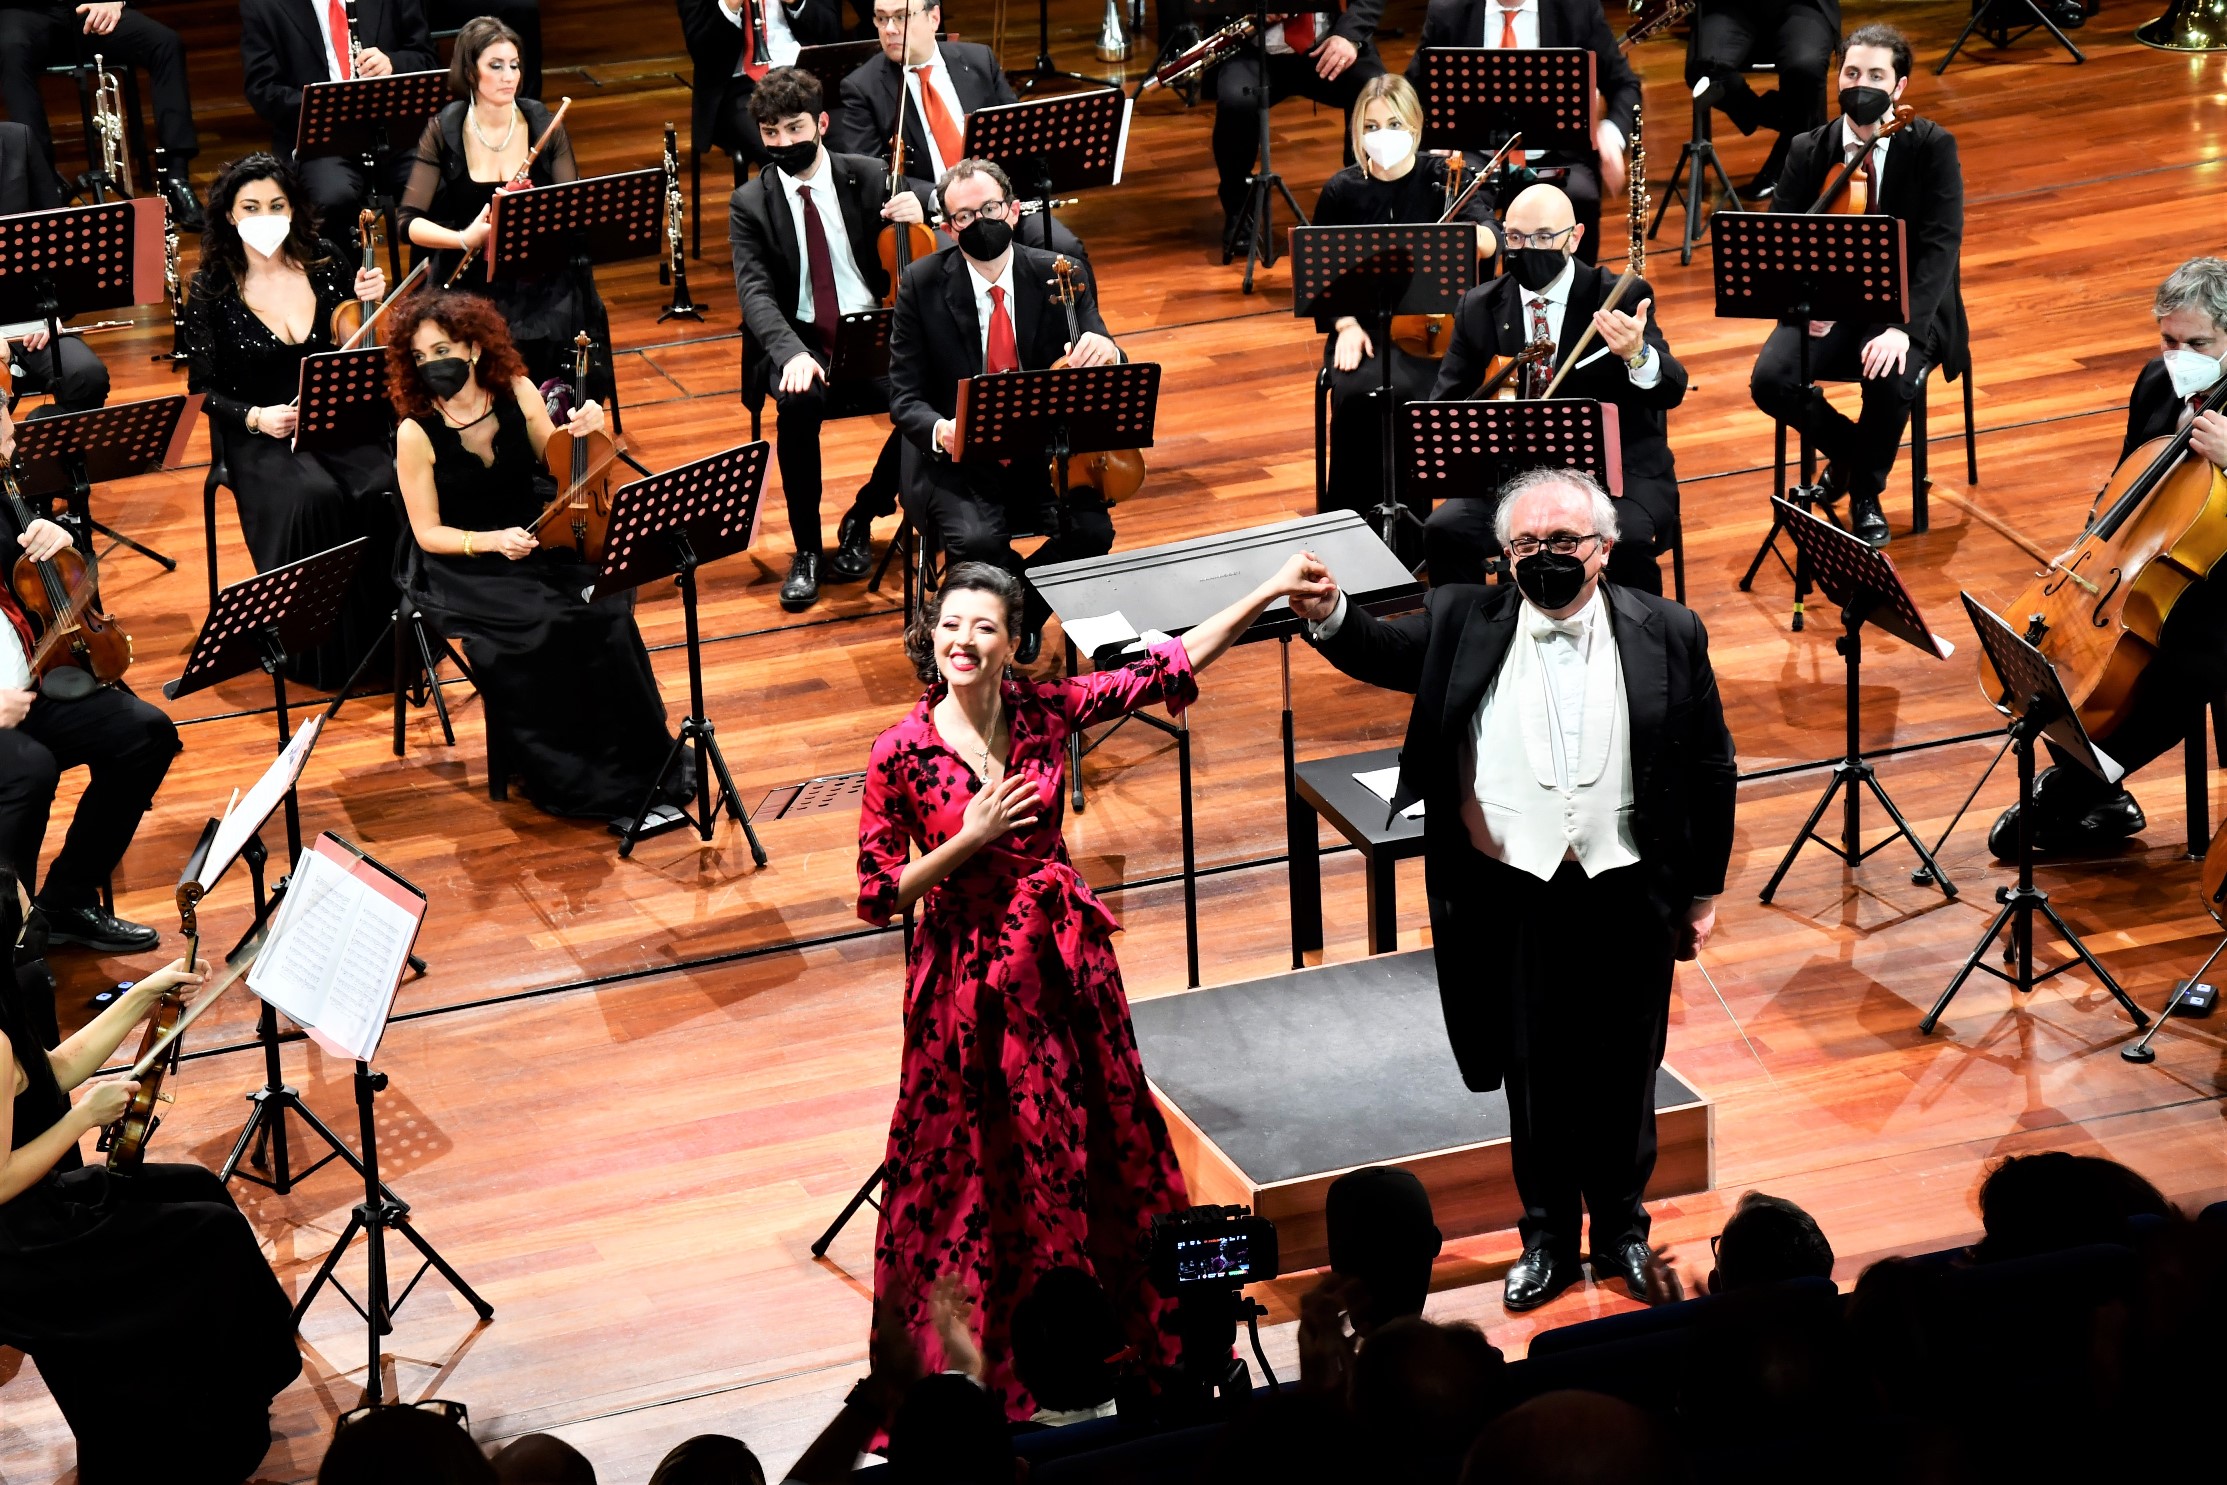 Fondazione Ravello: Ravello replay, concerto di Lisette Oropesa in streaming e on demand